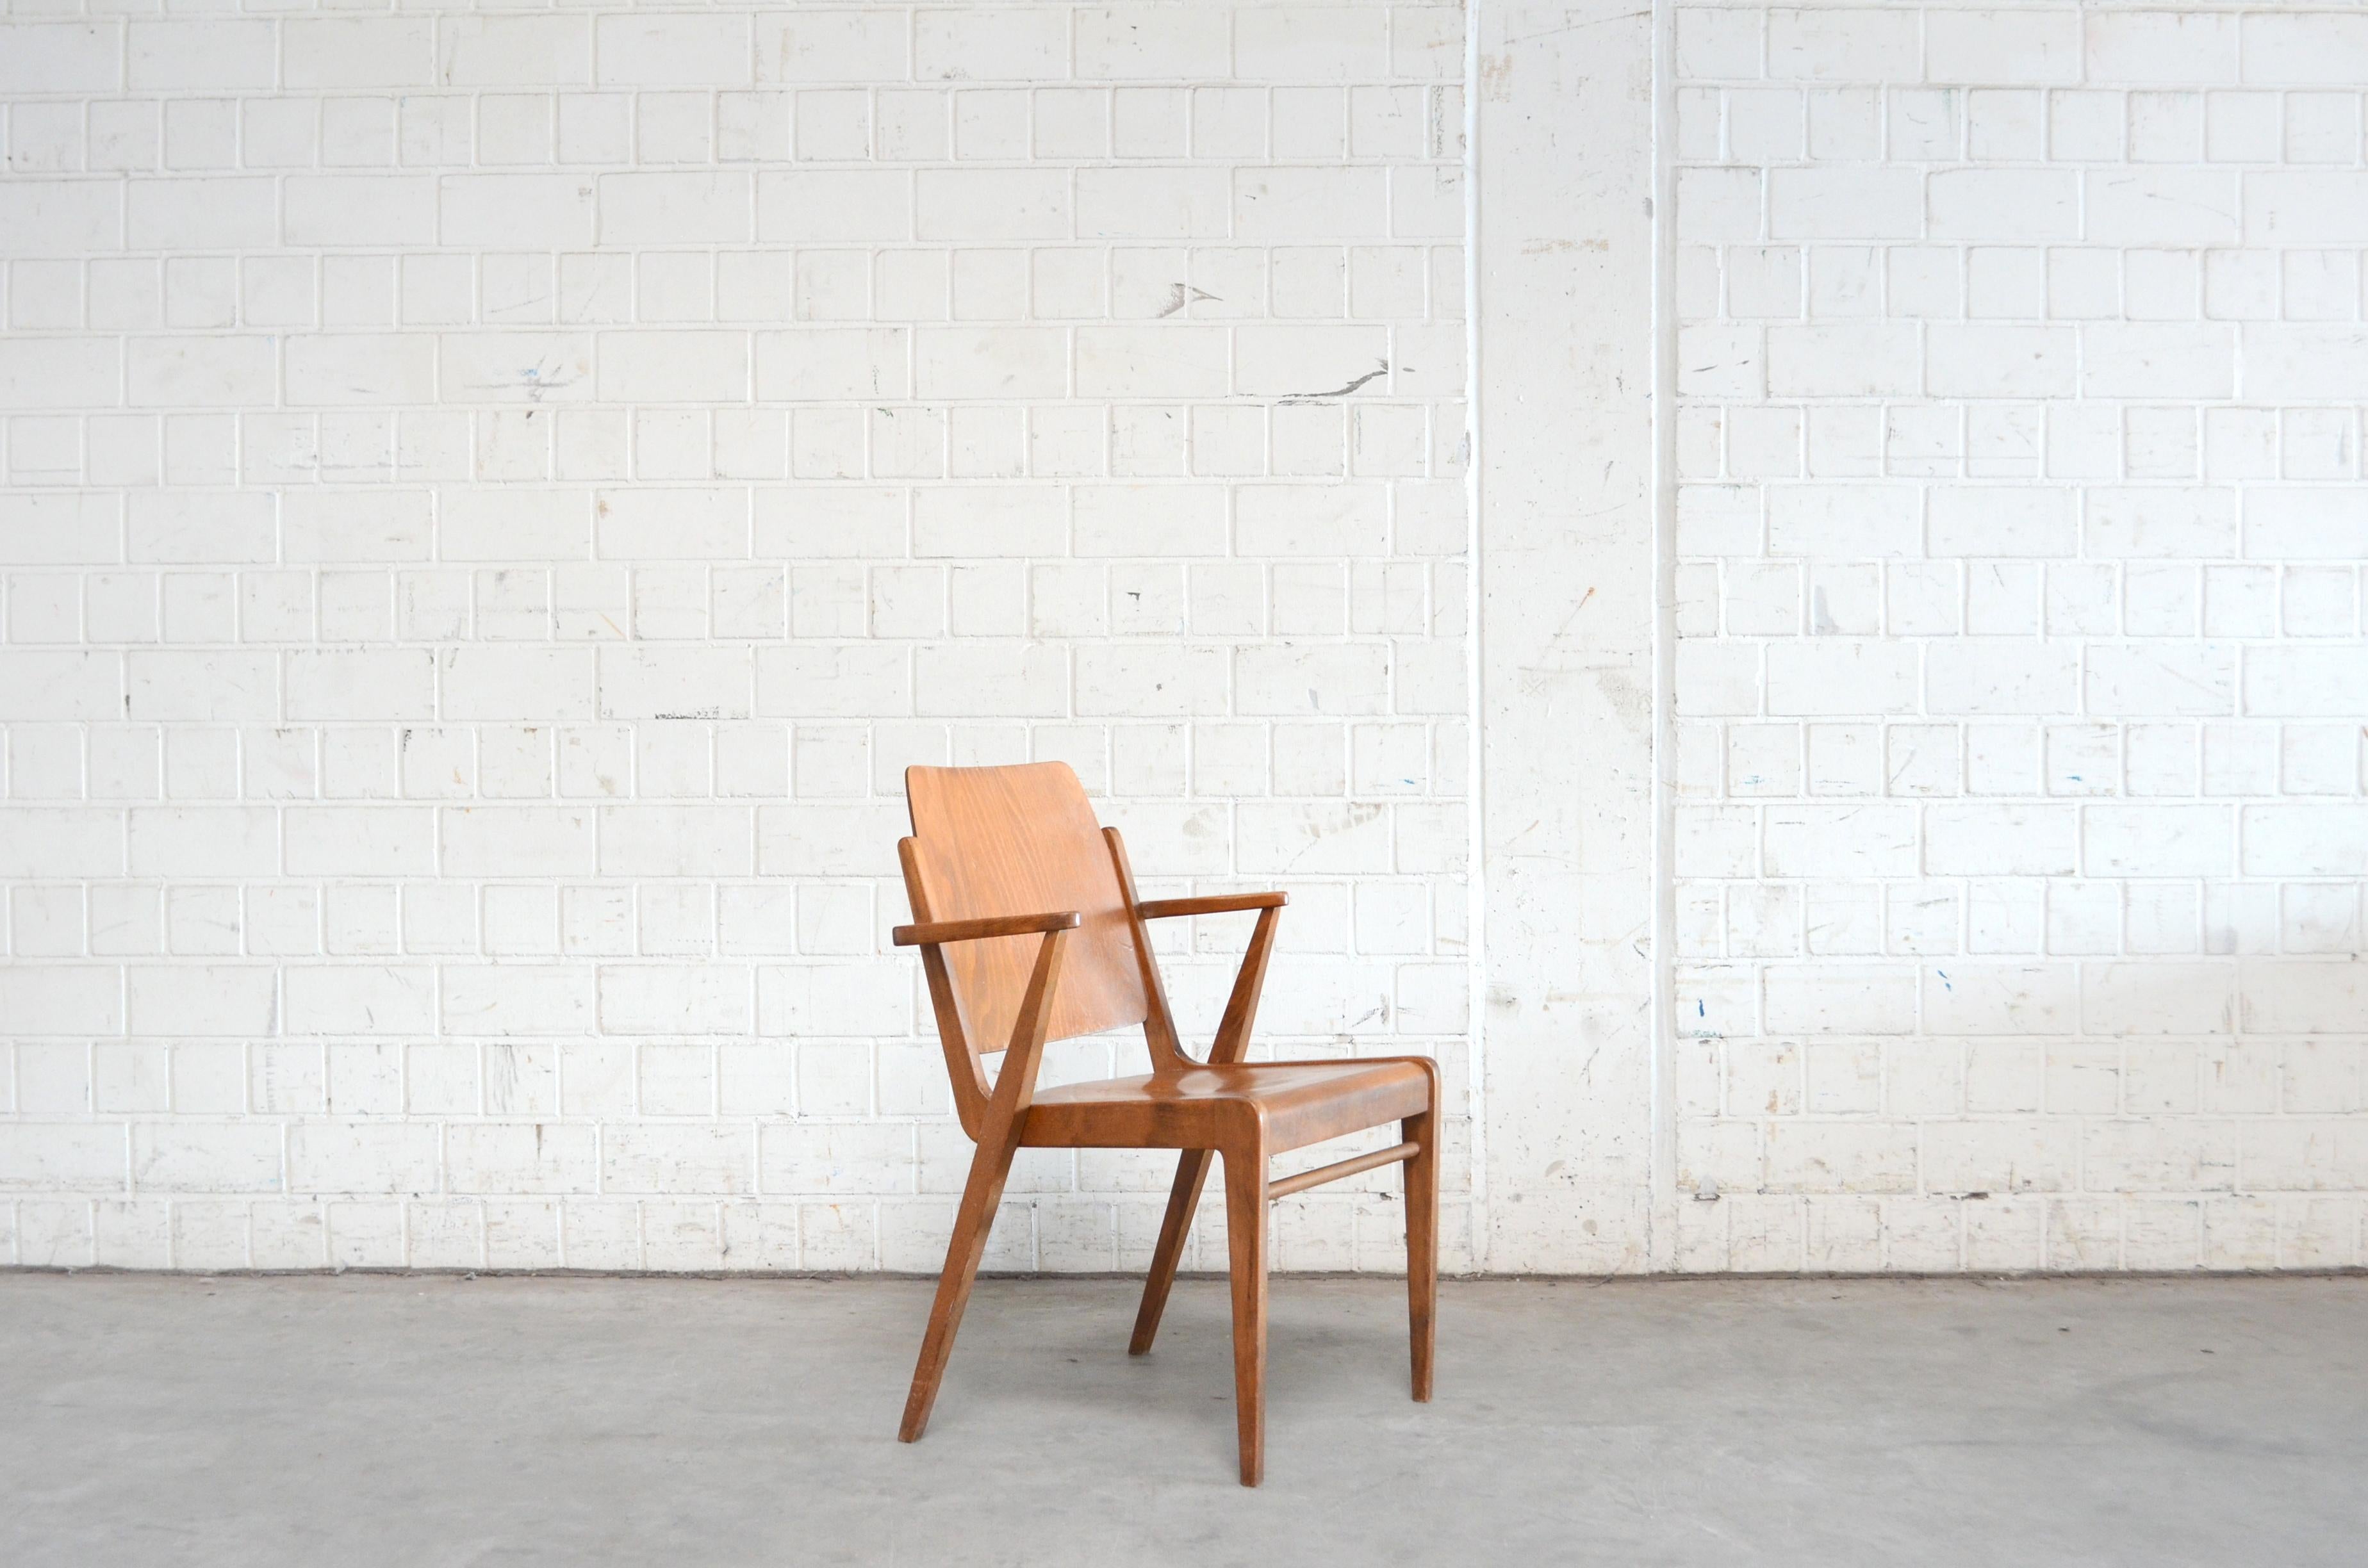 Diese Austro-Stühle wurden vom österreichischen Architekten Franz Schuster entworfen und von Wiesner Hager produziert.
Bei dieser Version handelt es sich um die originale Vintage-Version mit braun gebeiztem Buchenholz und lackierter